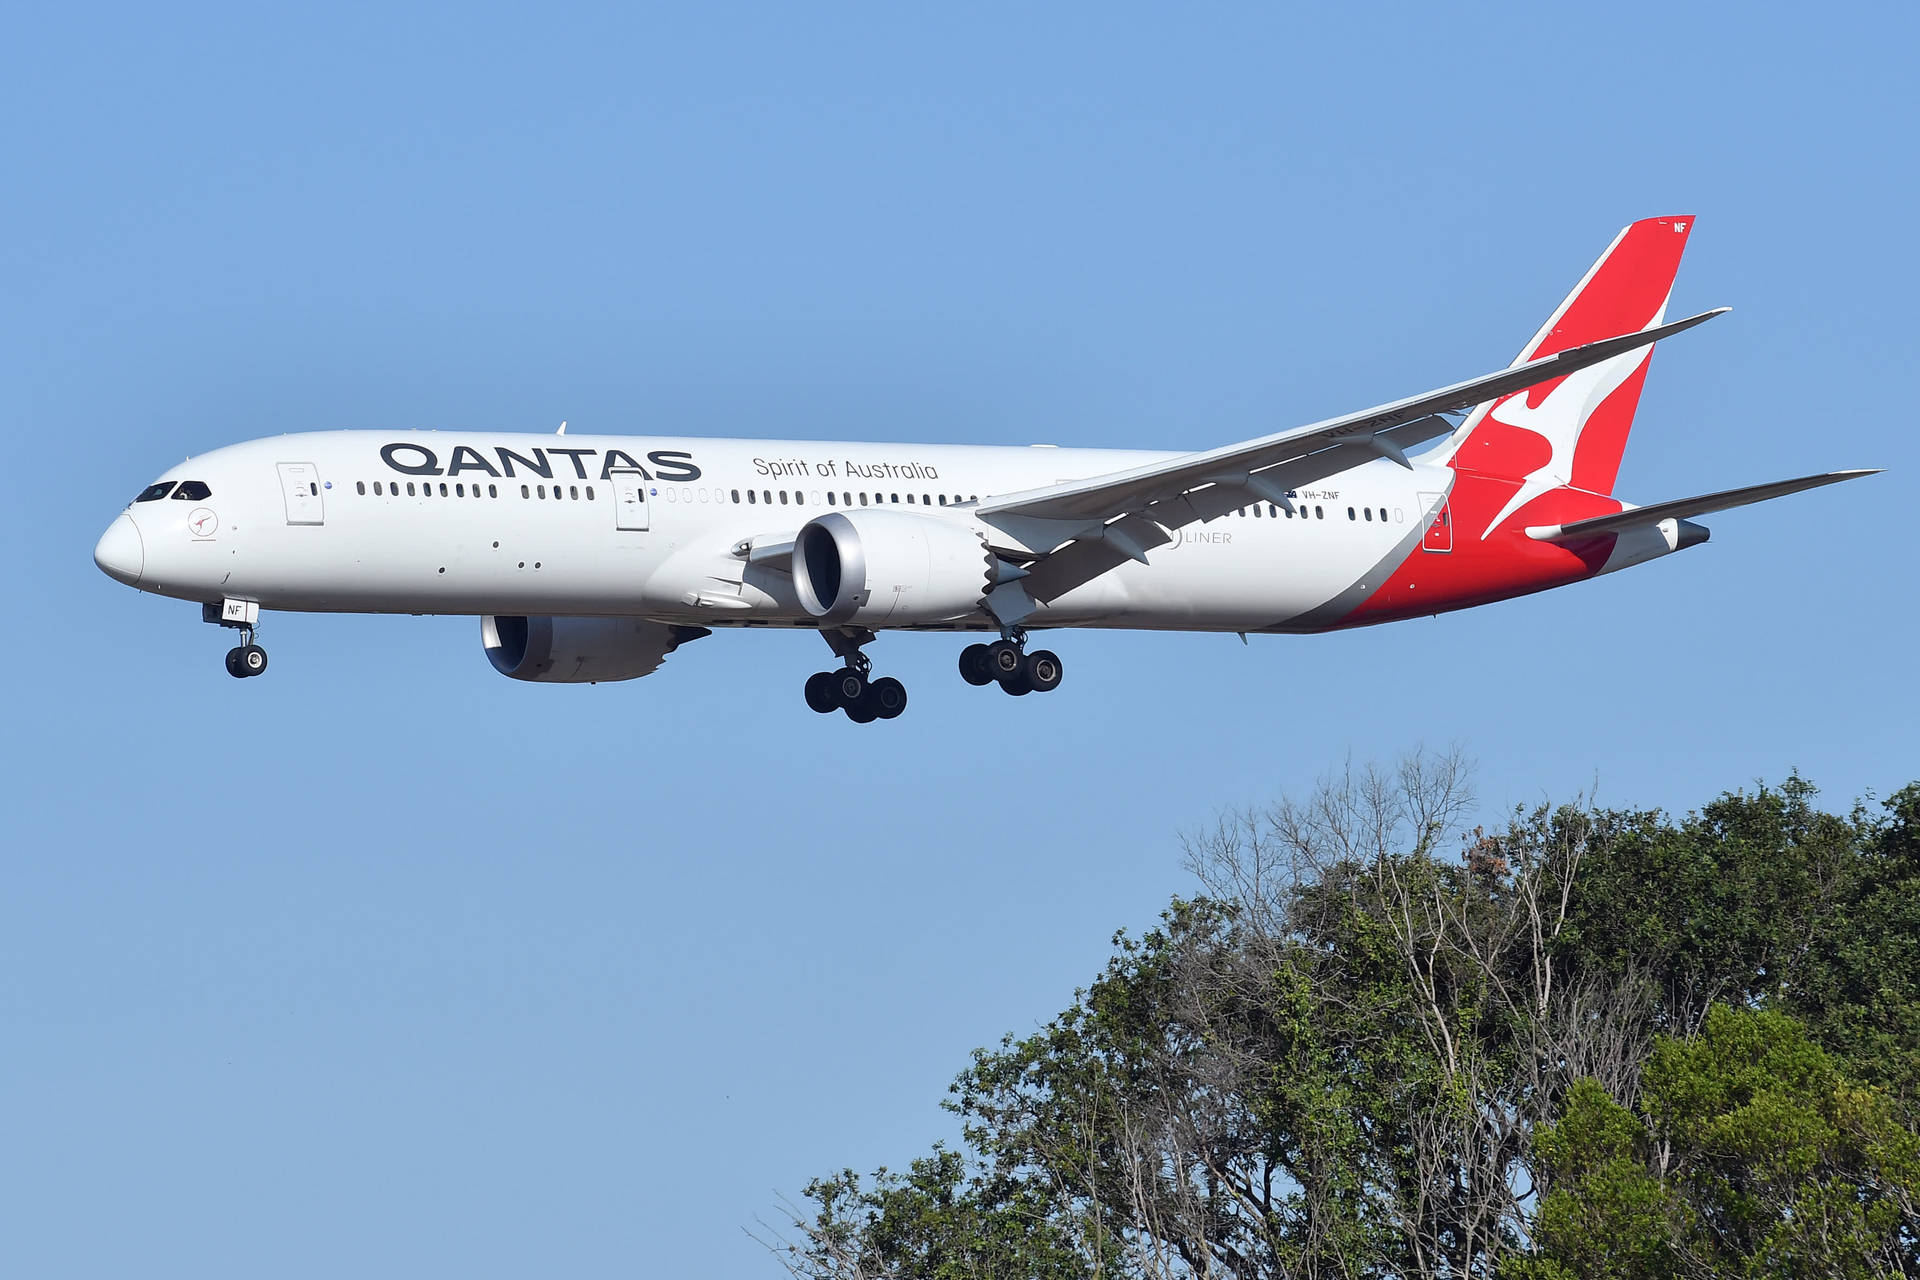 Qantasairways Flugzeug Landet. Wallpaper